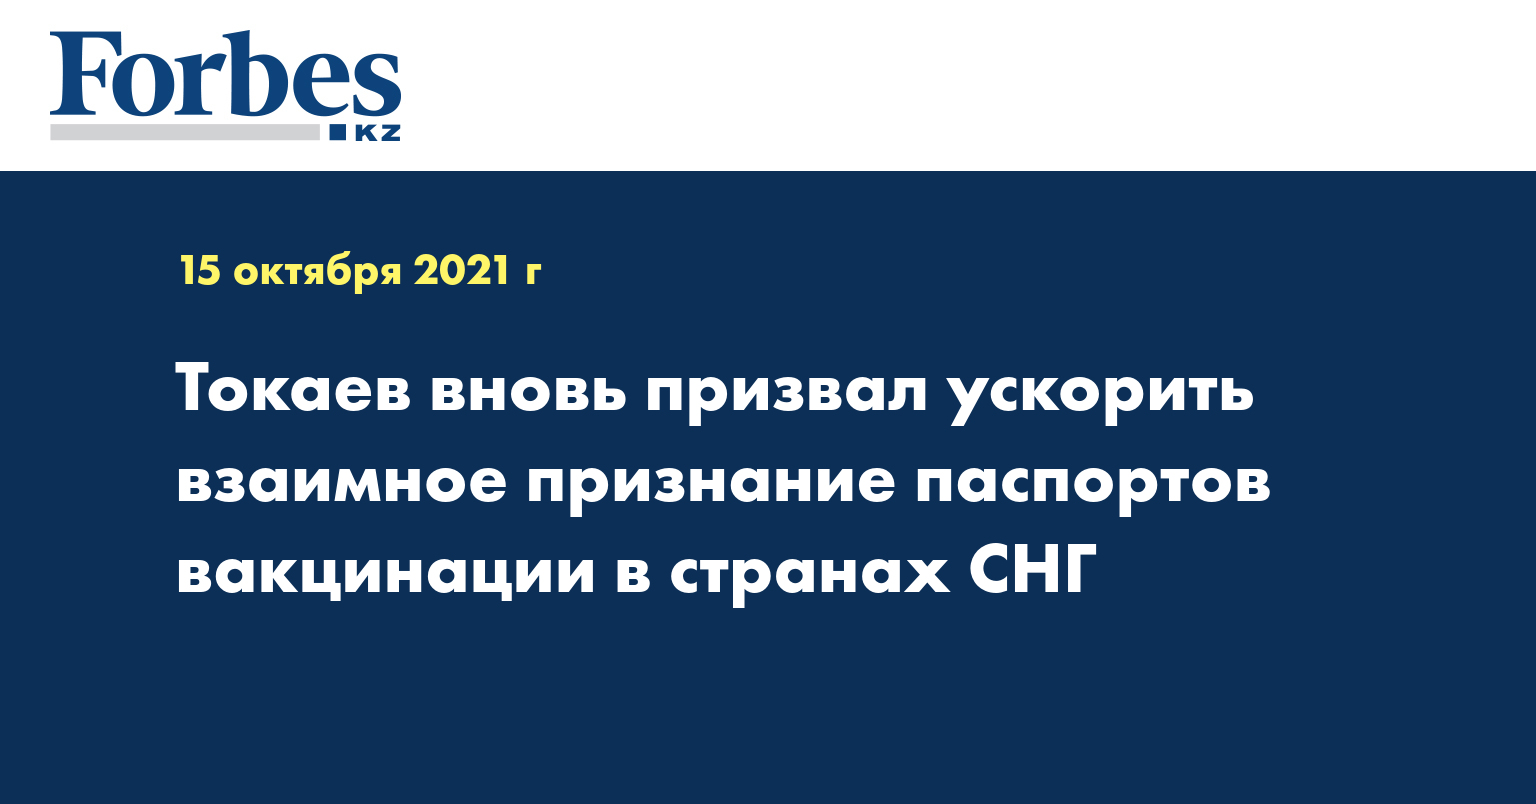 Токаев вновь призвал ускорить взаимное признание паспортов вакцинации в странах СНГ 